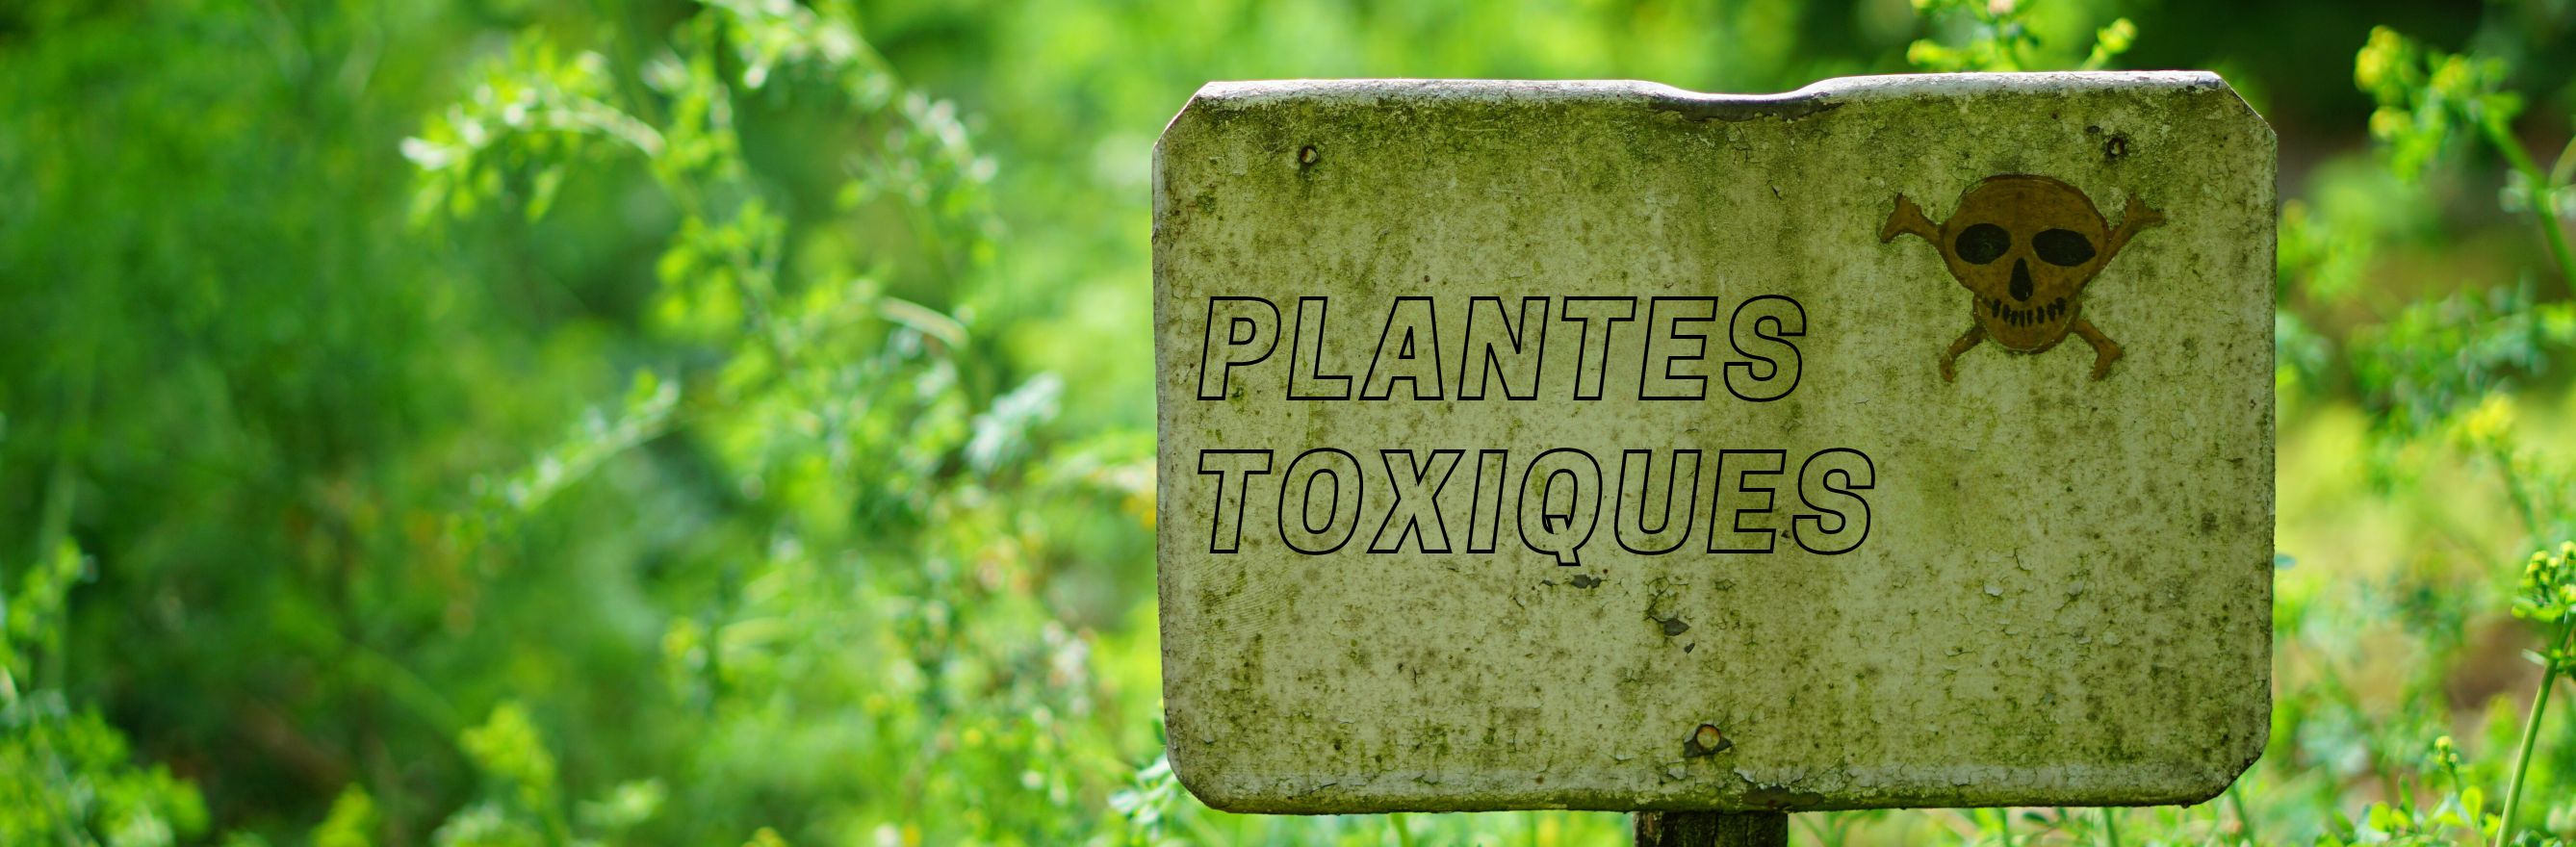 C'est la photo d'une pancarte indiquant "plantes toxiques" et une tête de mort pour prévenir du danger.